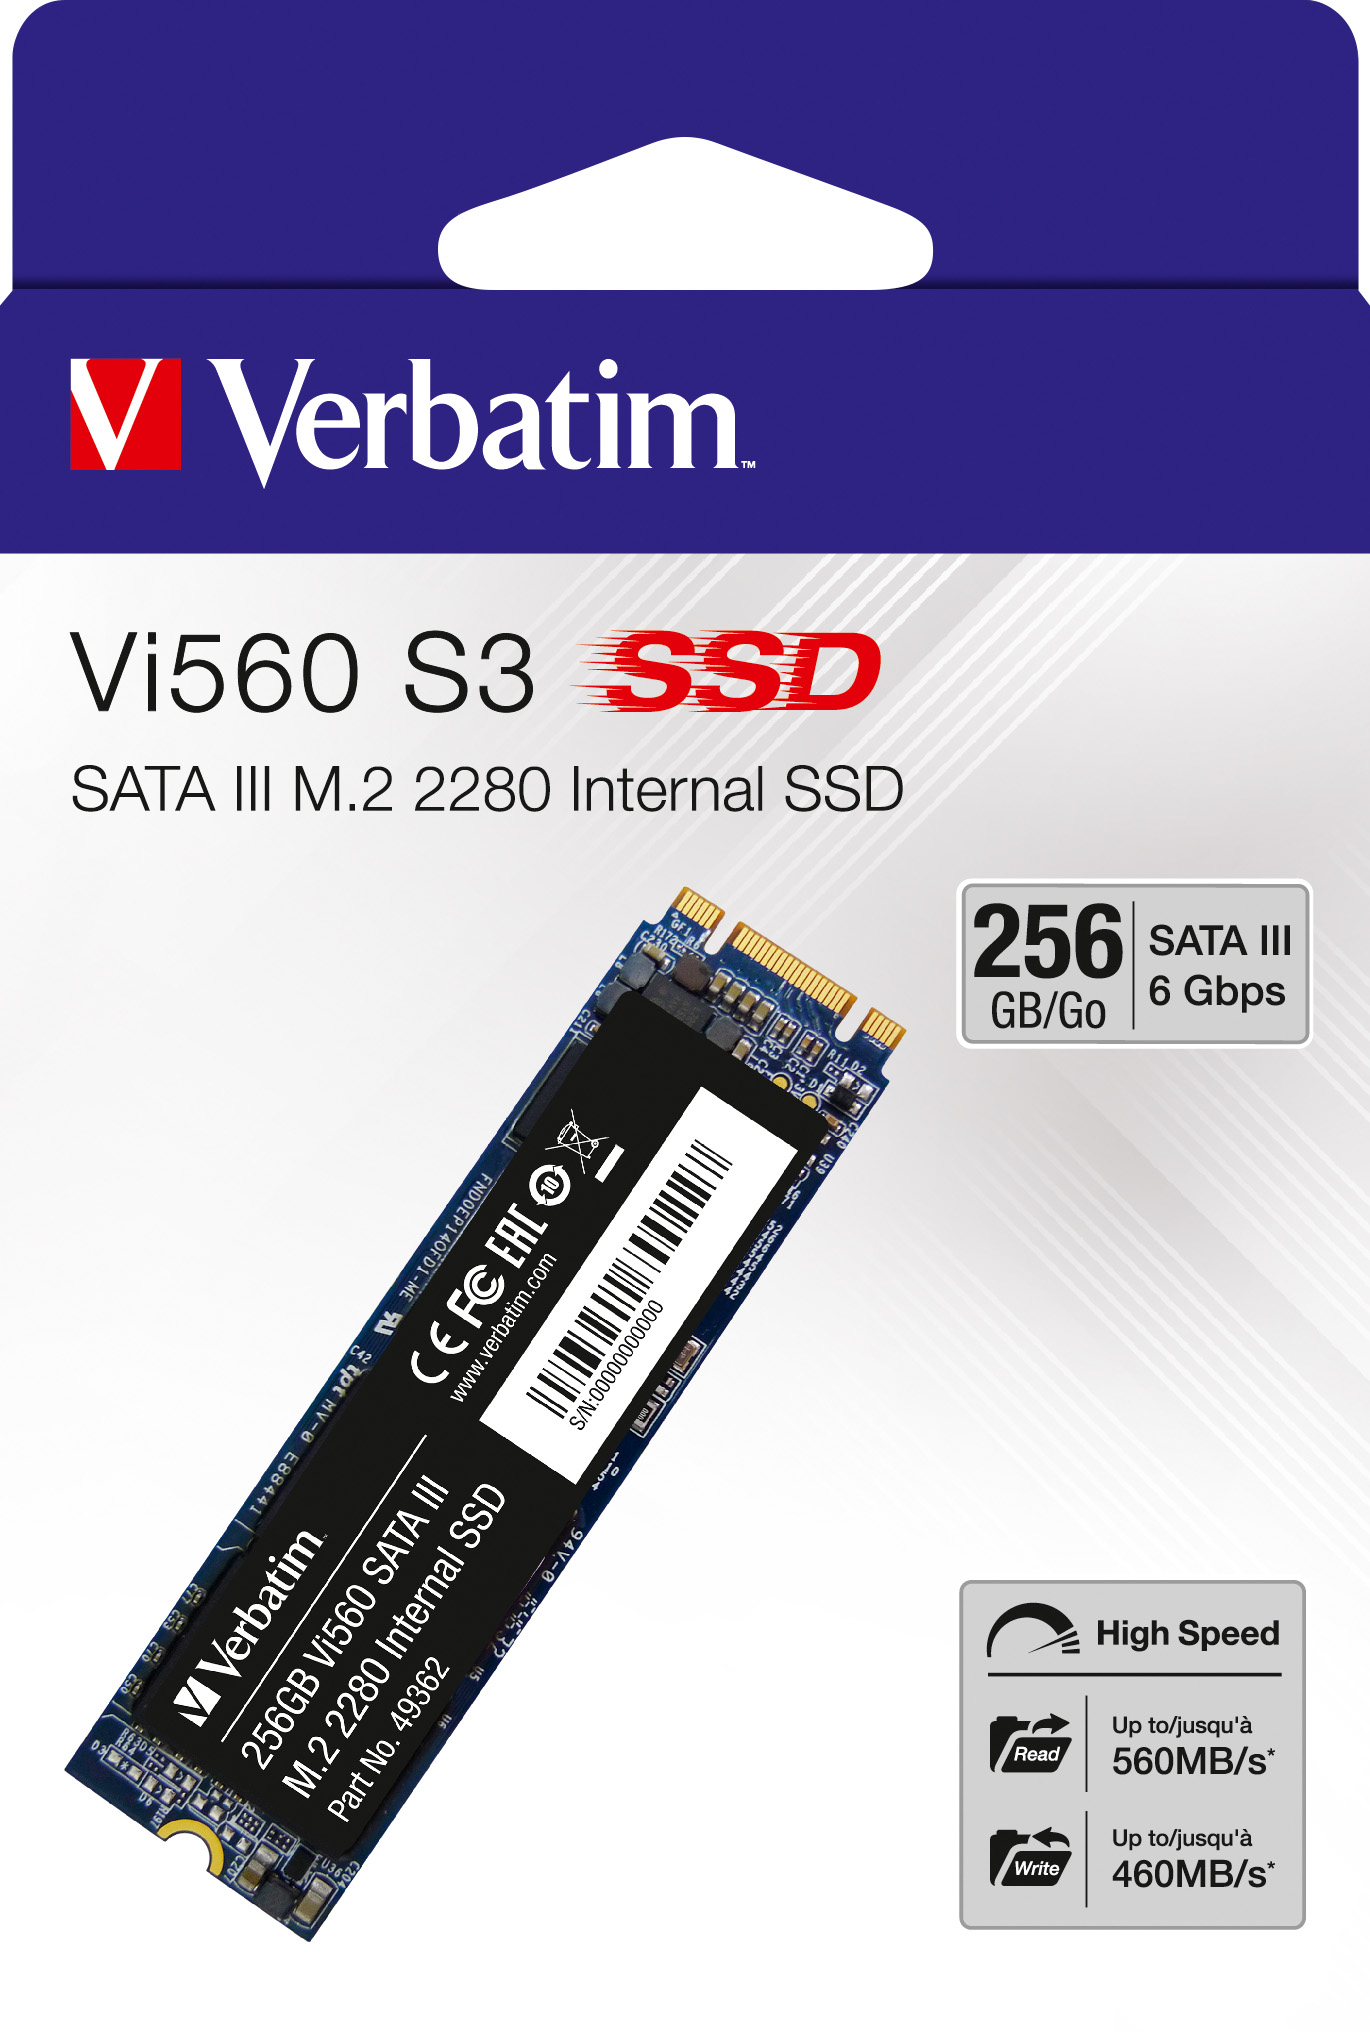 Verbatim SSD 256GB, SATA-III, M.2 2280 Vi560 S3, (R) 560MB/s, (W) 460MB/s, Retail